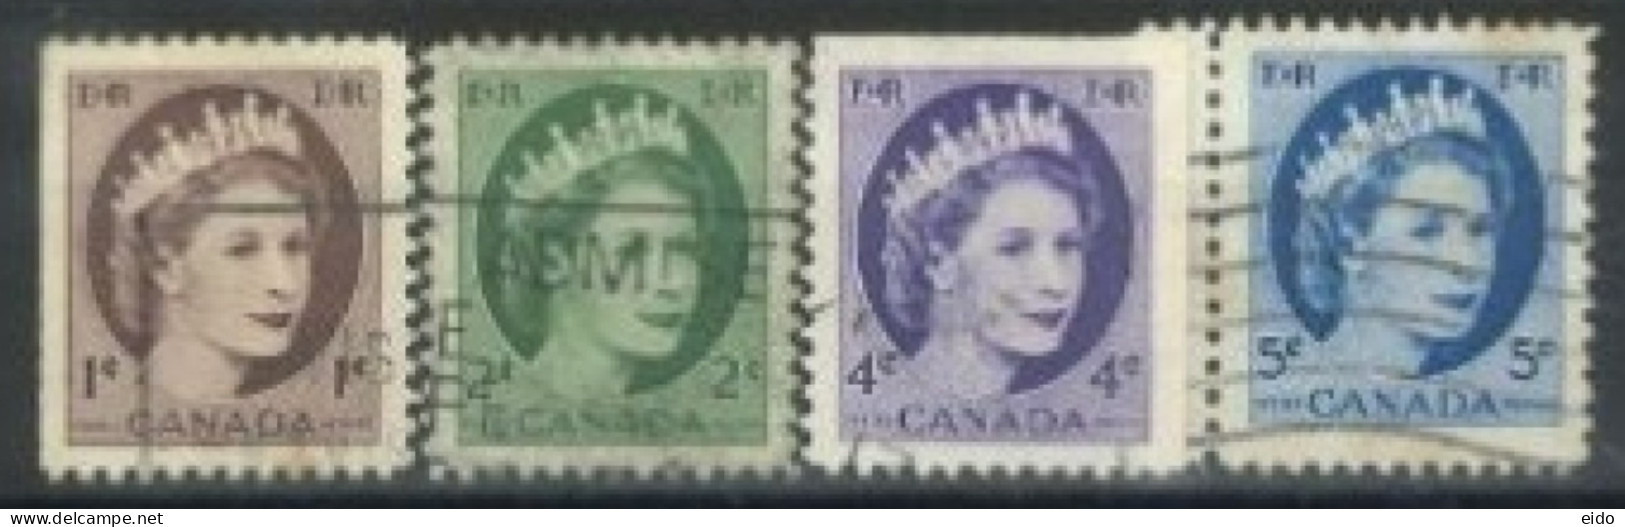 CANADA - 1954, QUEEN ELIZABETH II STAMPS SET OF 4, USED. - Gebruikt